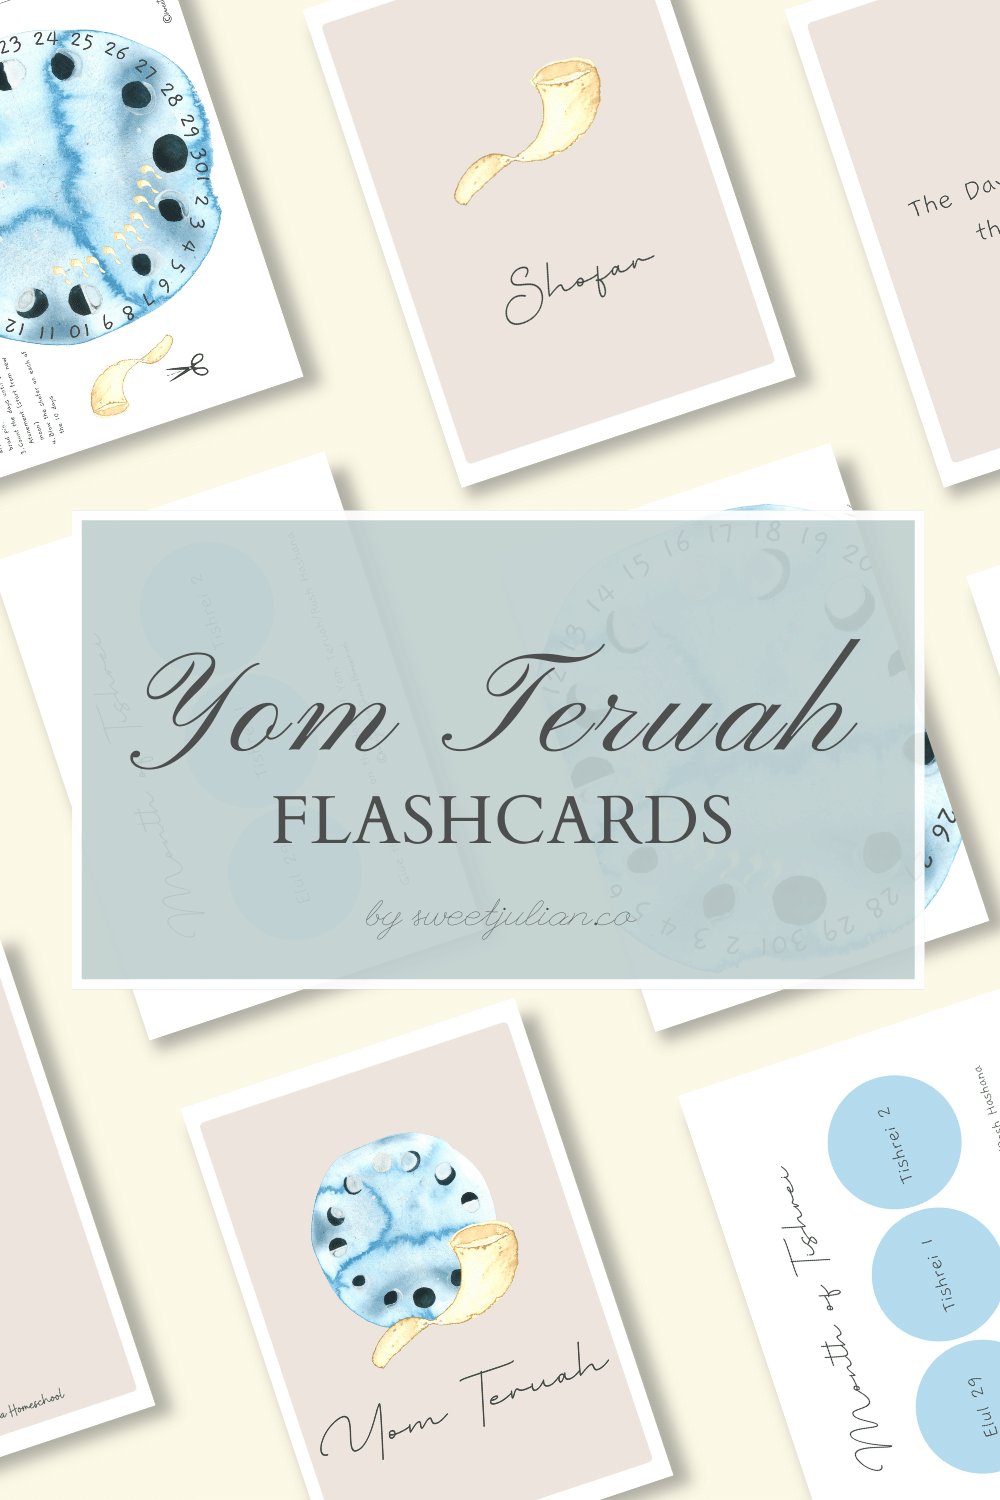 Yom Teruah Flashcards + More 🌘🌑🌒